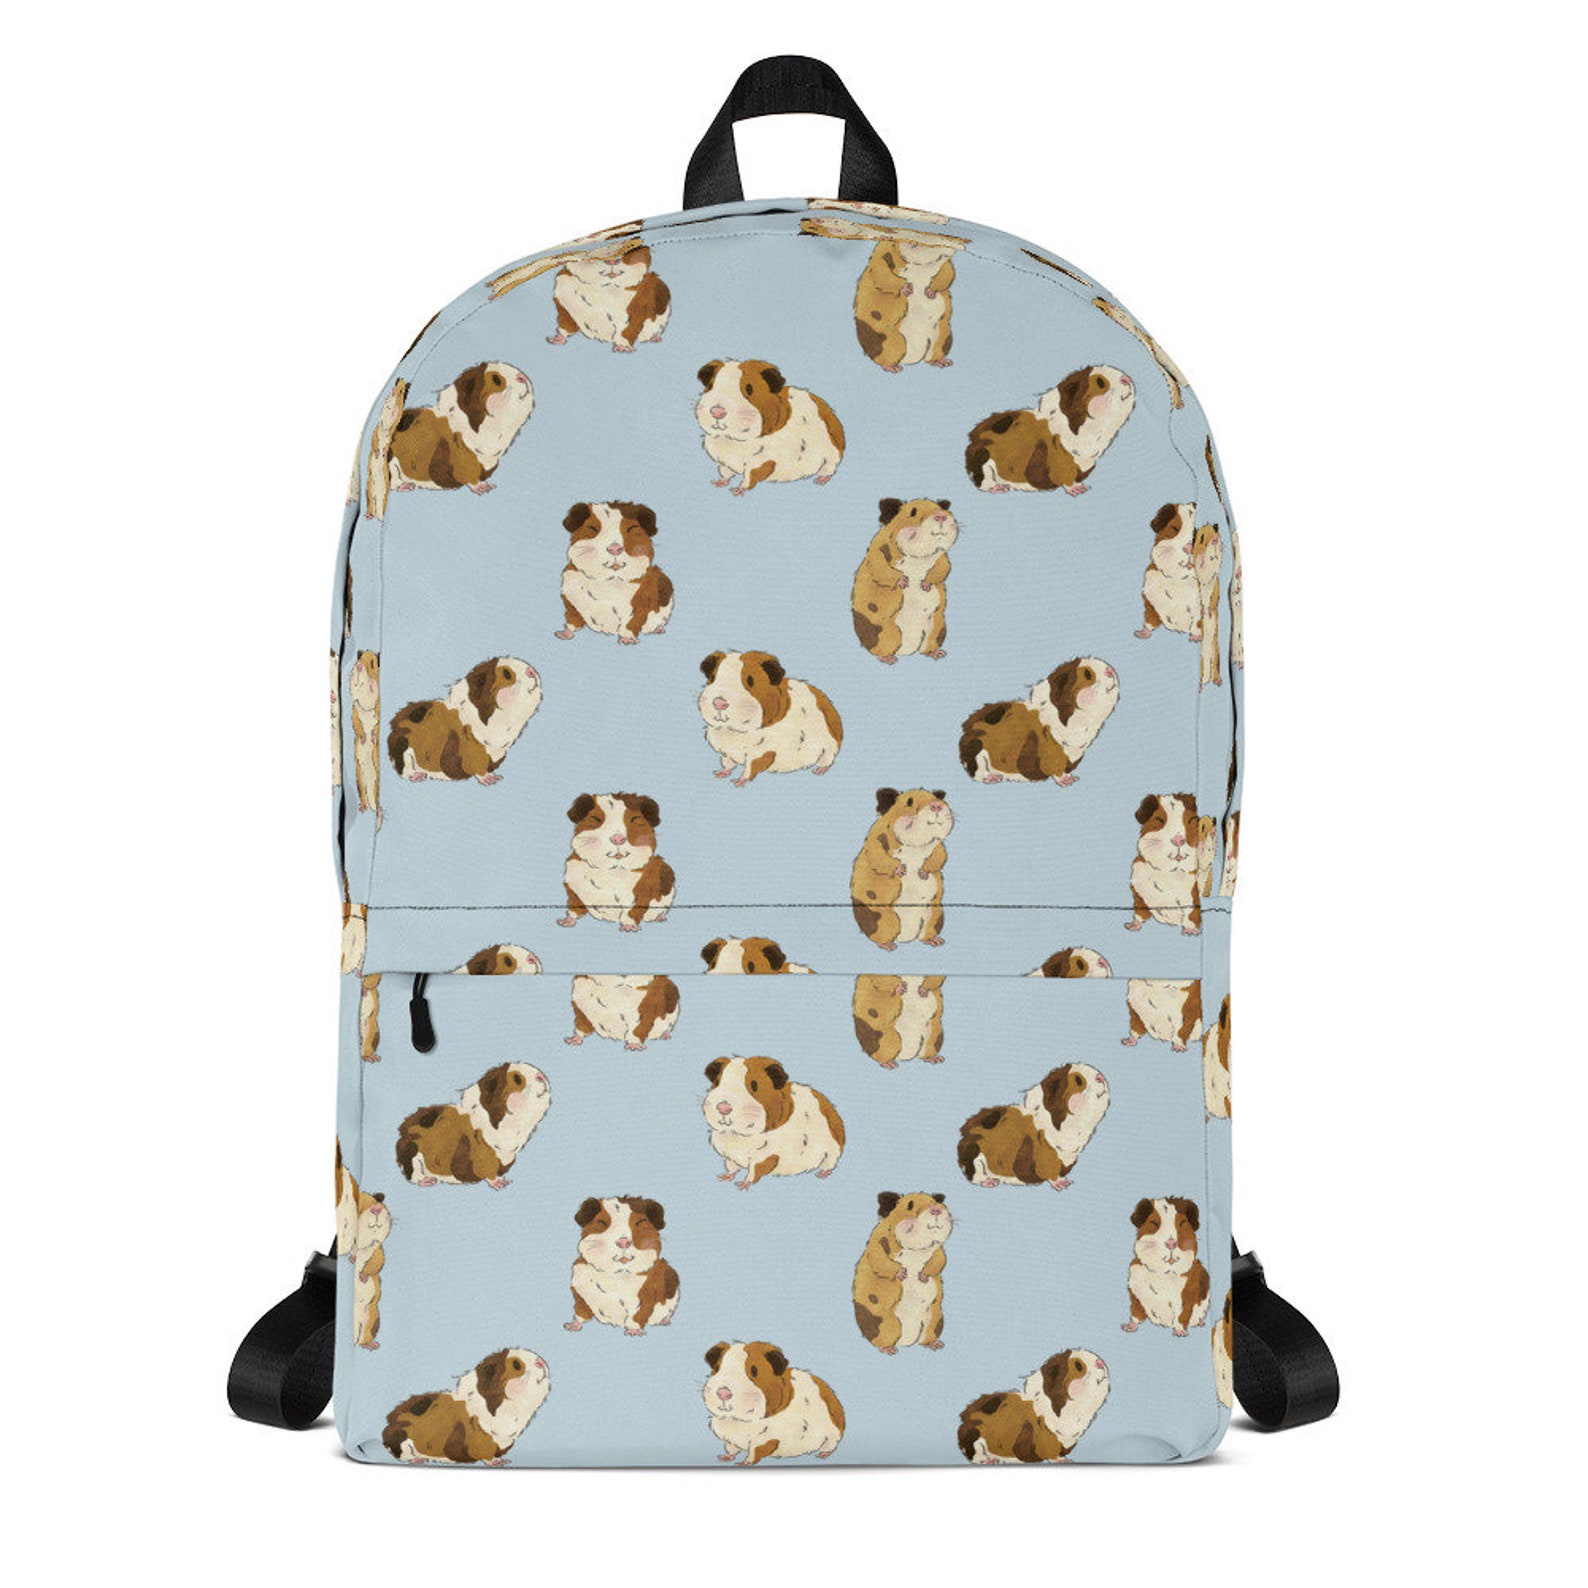 Guinea Pig Backpack Animal Laptop Bag Women's Travel | Etsy